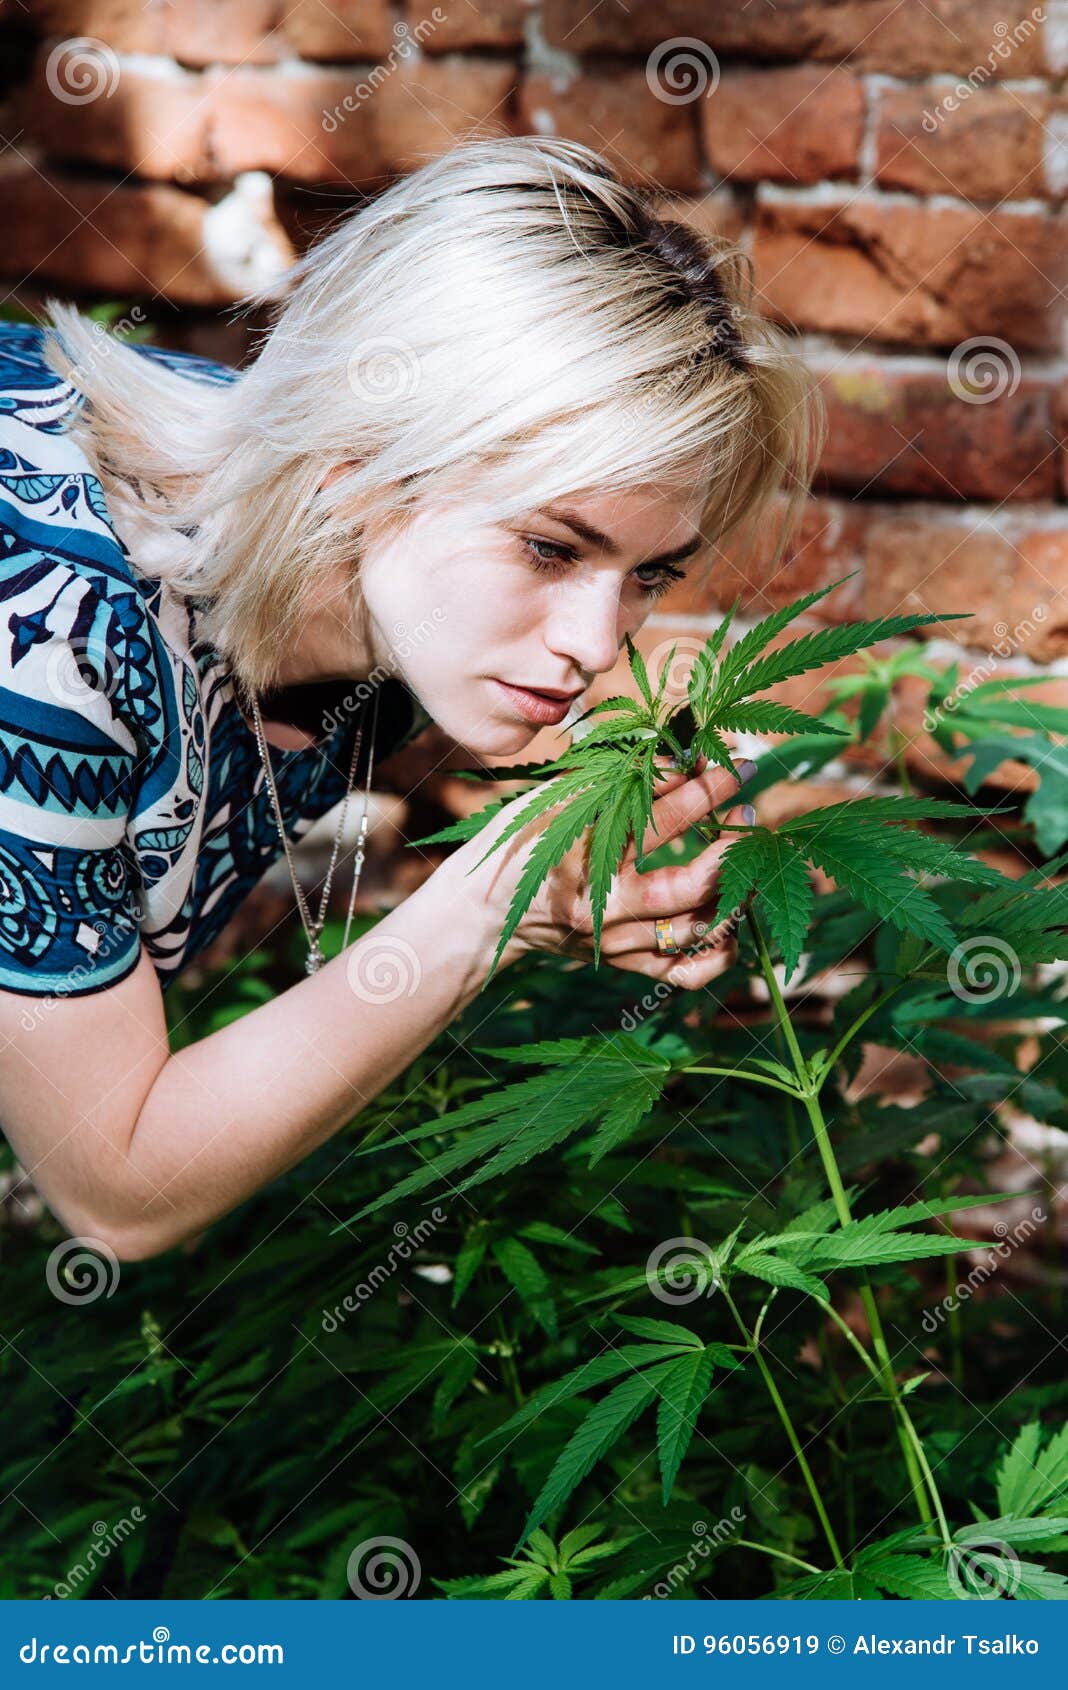 Фото девушек в конопле марихуана семена купить цены